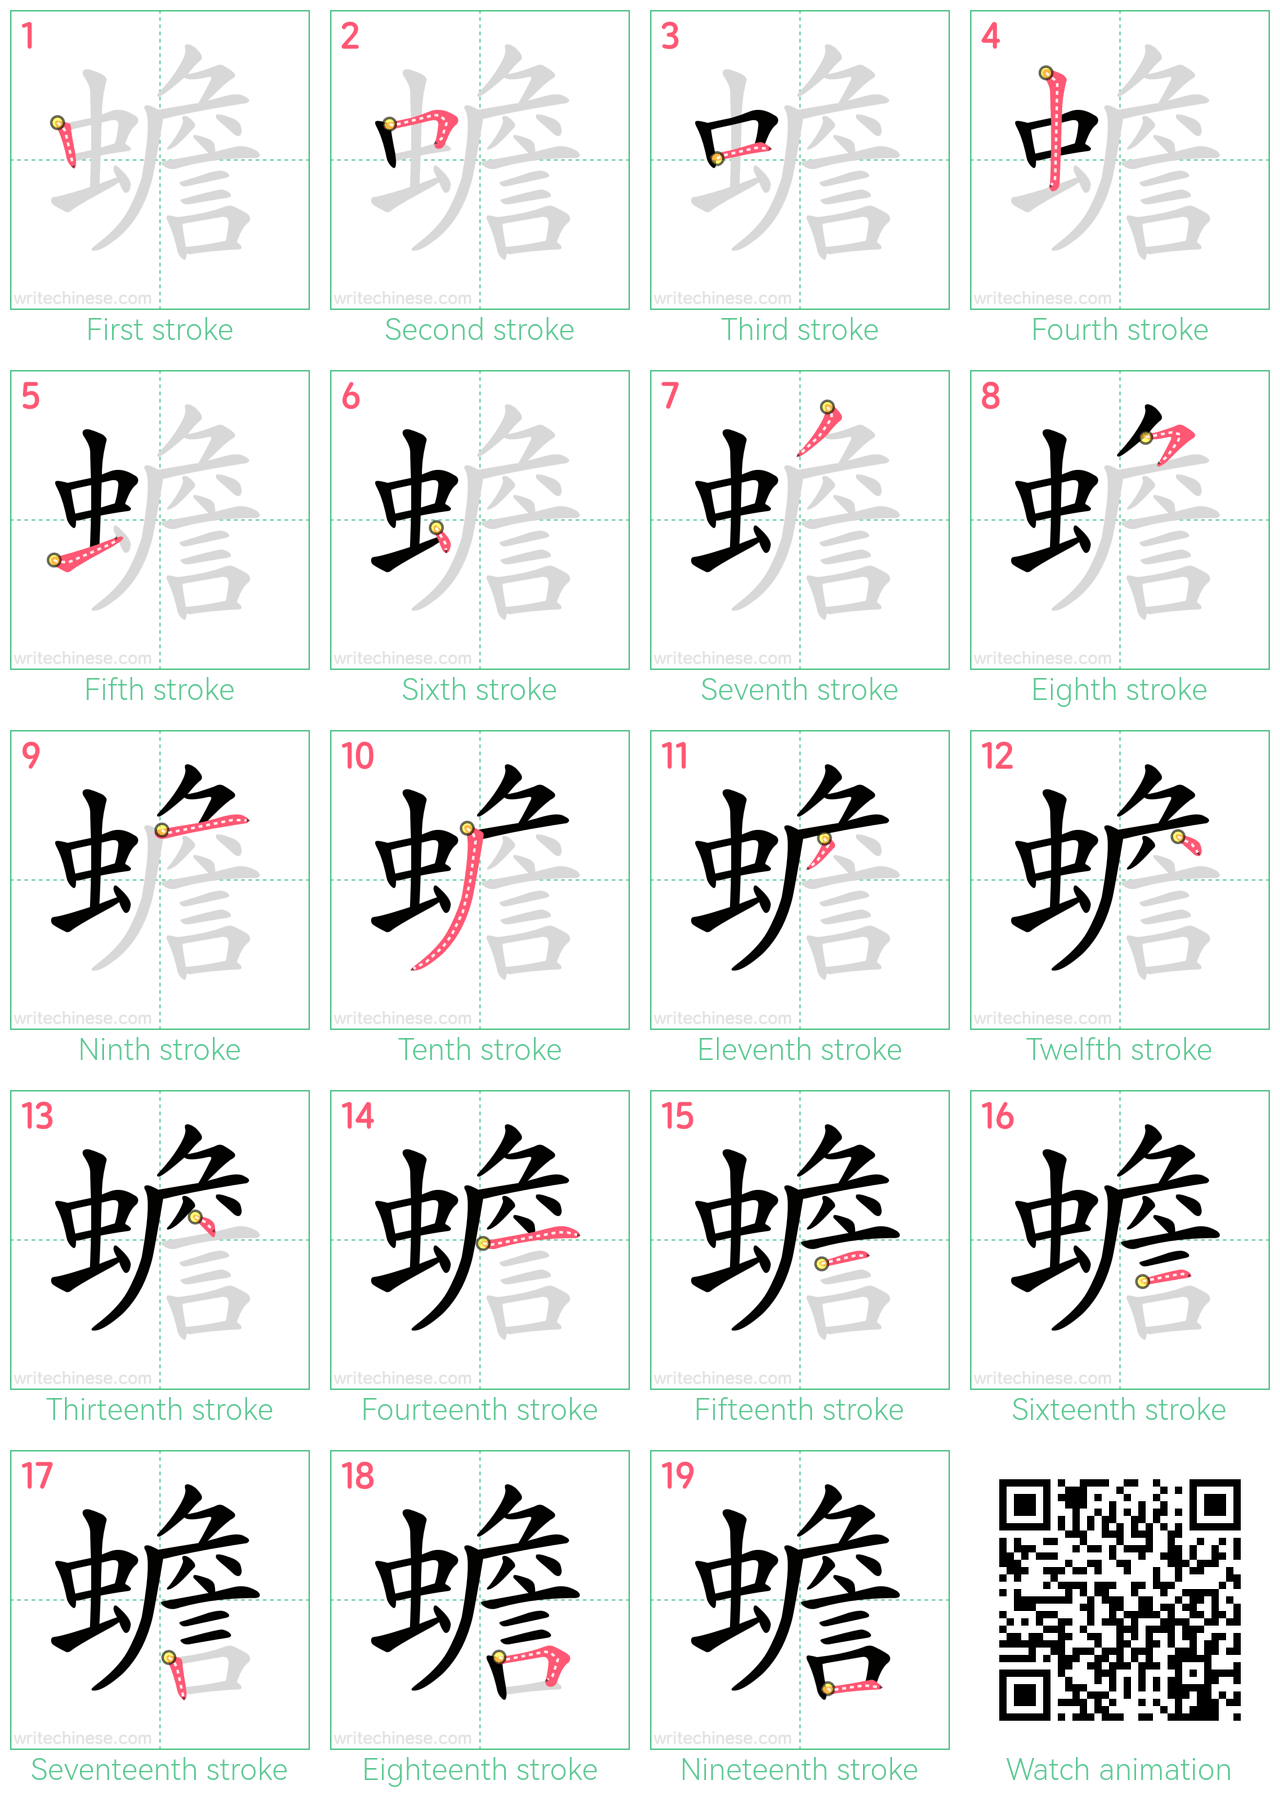 蟾 step-by-step stroke order diagrams